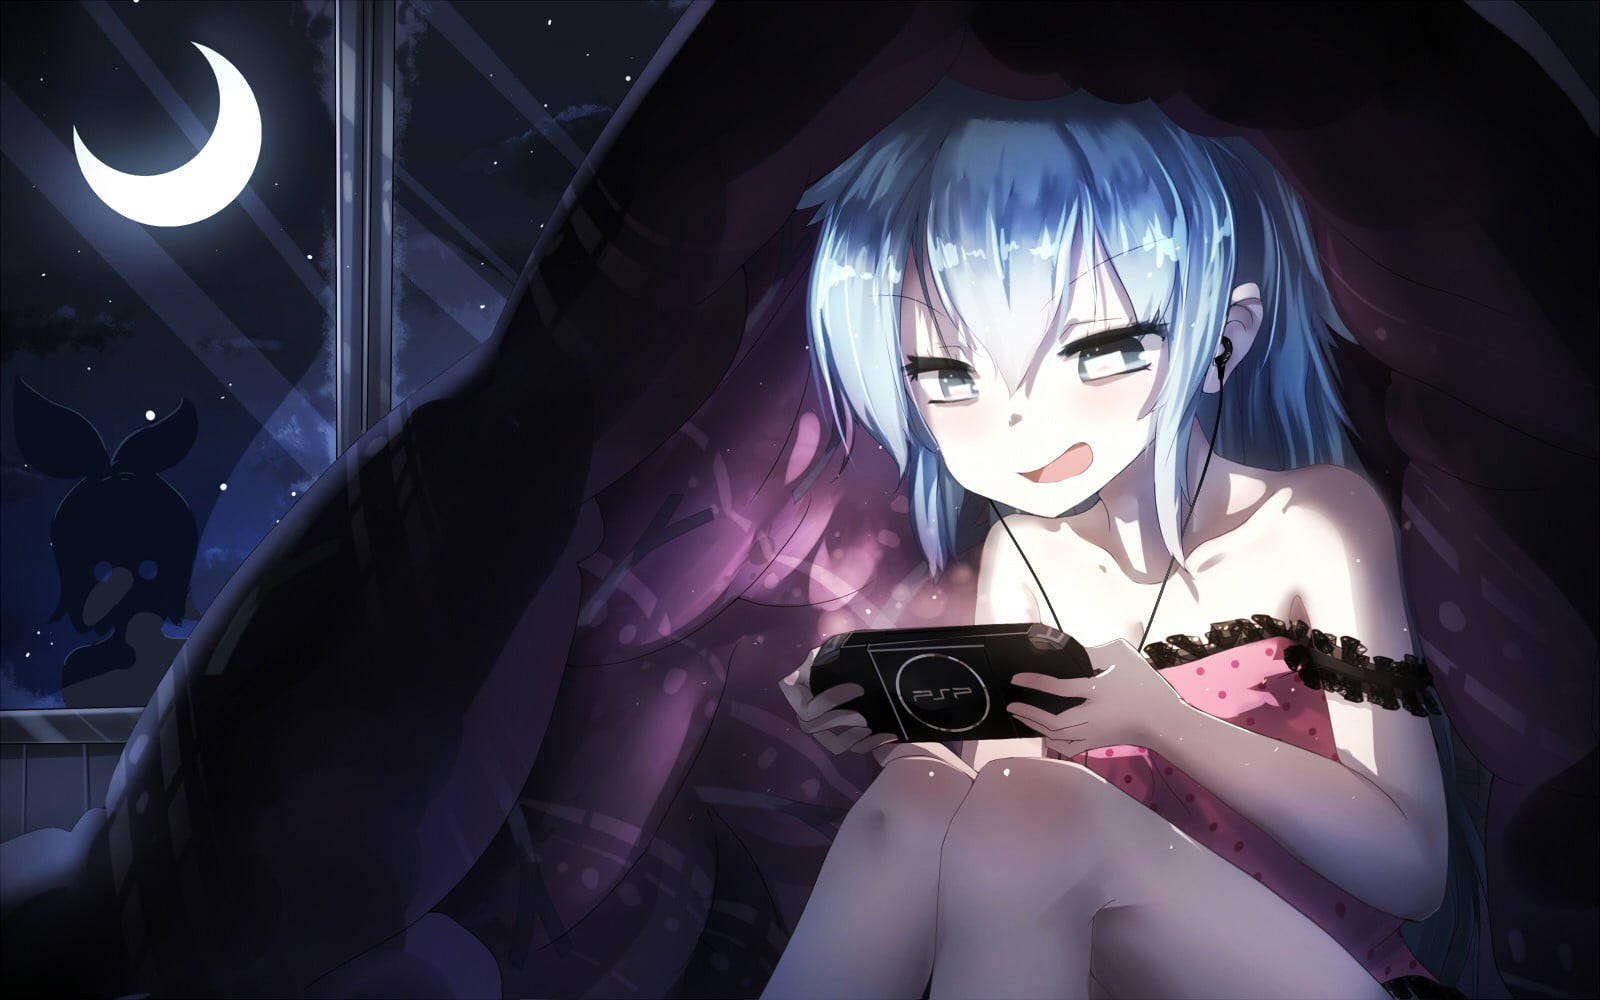 Psp Anime Girl Playing At Night Wallpaper